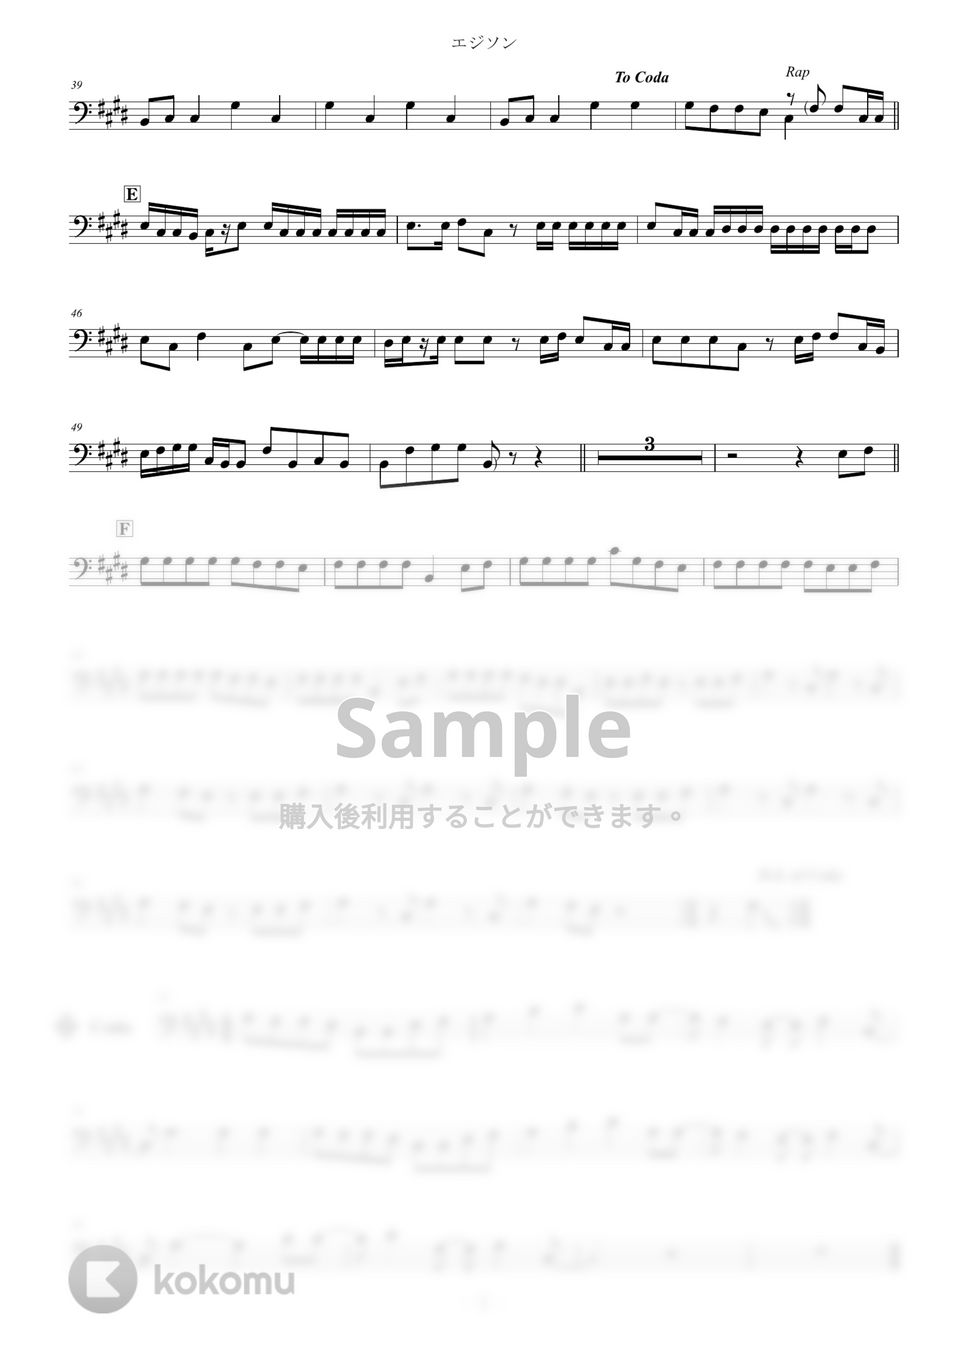 水曜日のカンパネラ - エジソン Bass Clef (ヘ音) メロディ譜 (チューバ/ユーフォニアム/トロンボーン/水曜日のカンパネラ/メロディ) by Zoe